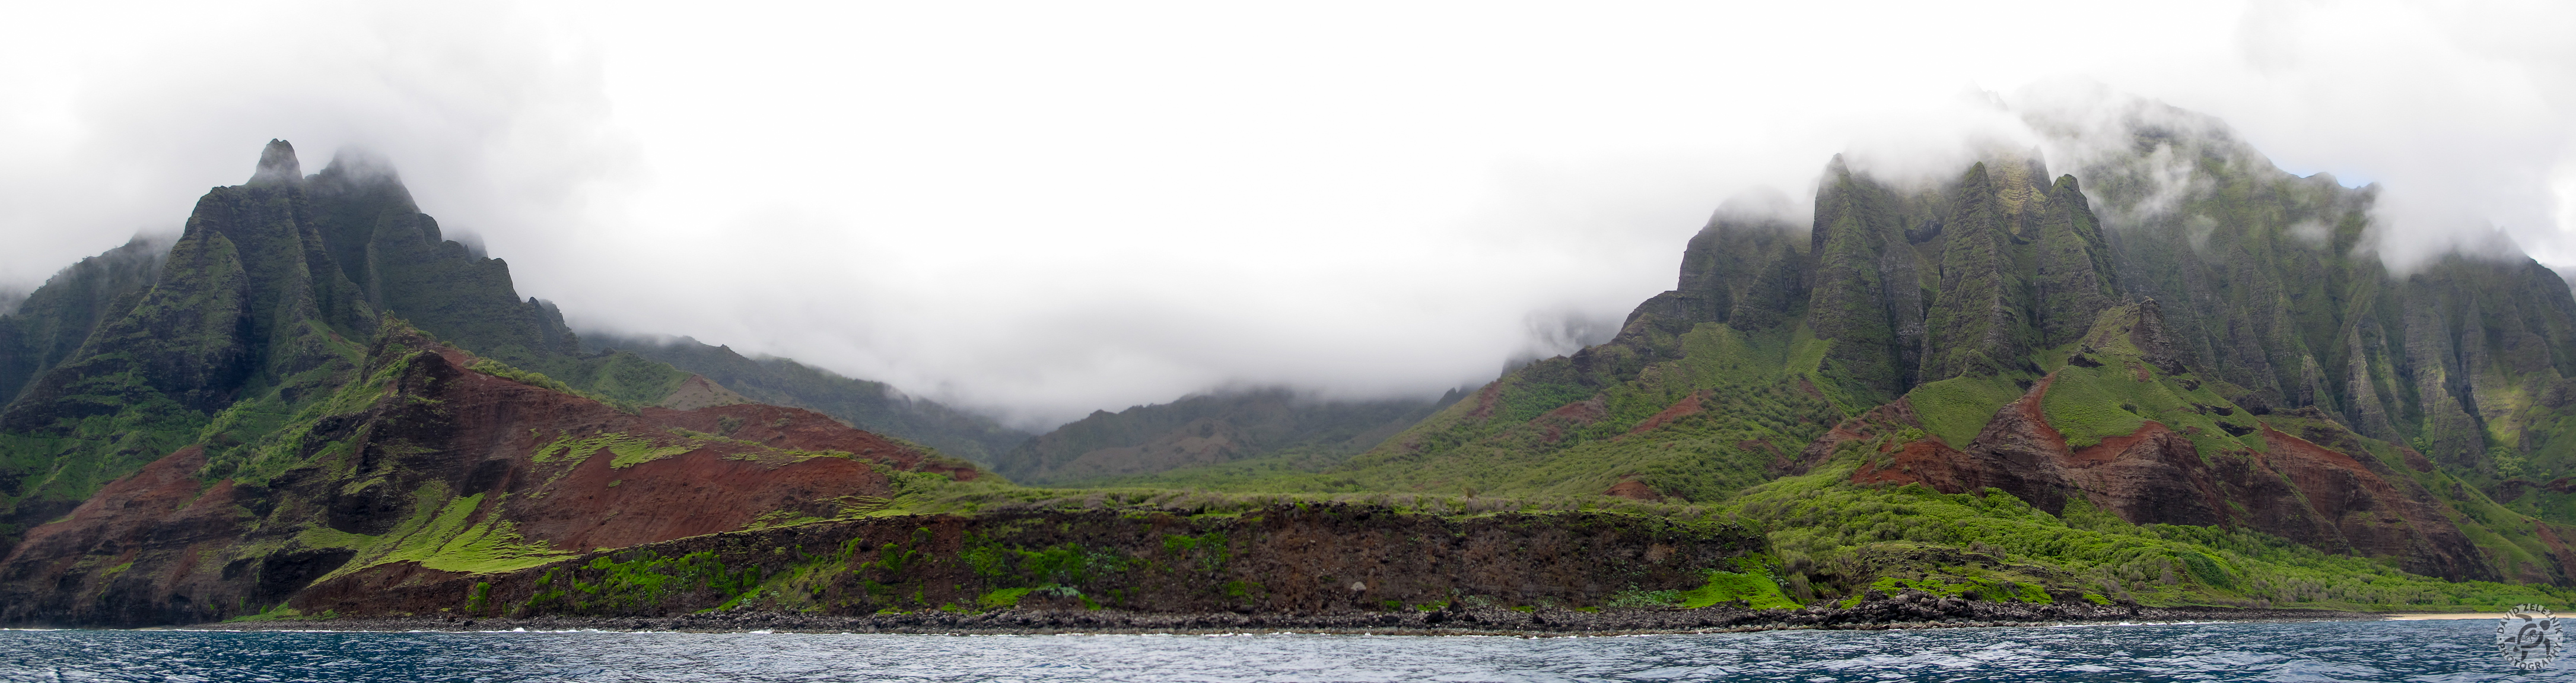 Hawaii2013-125